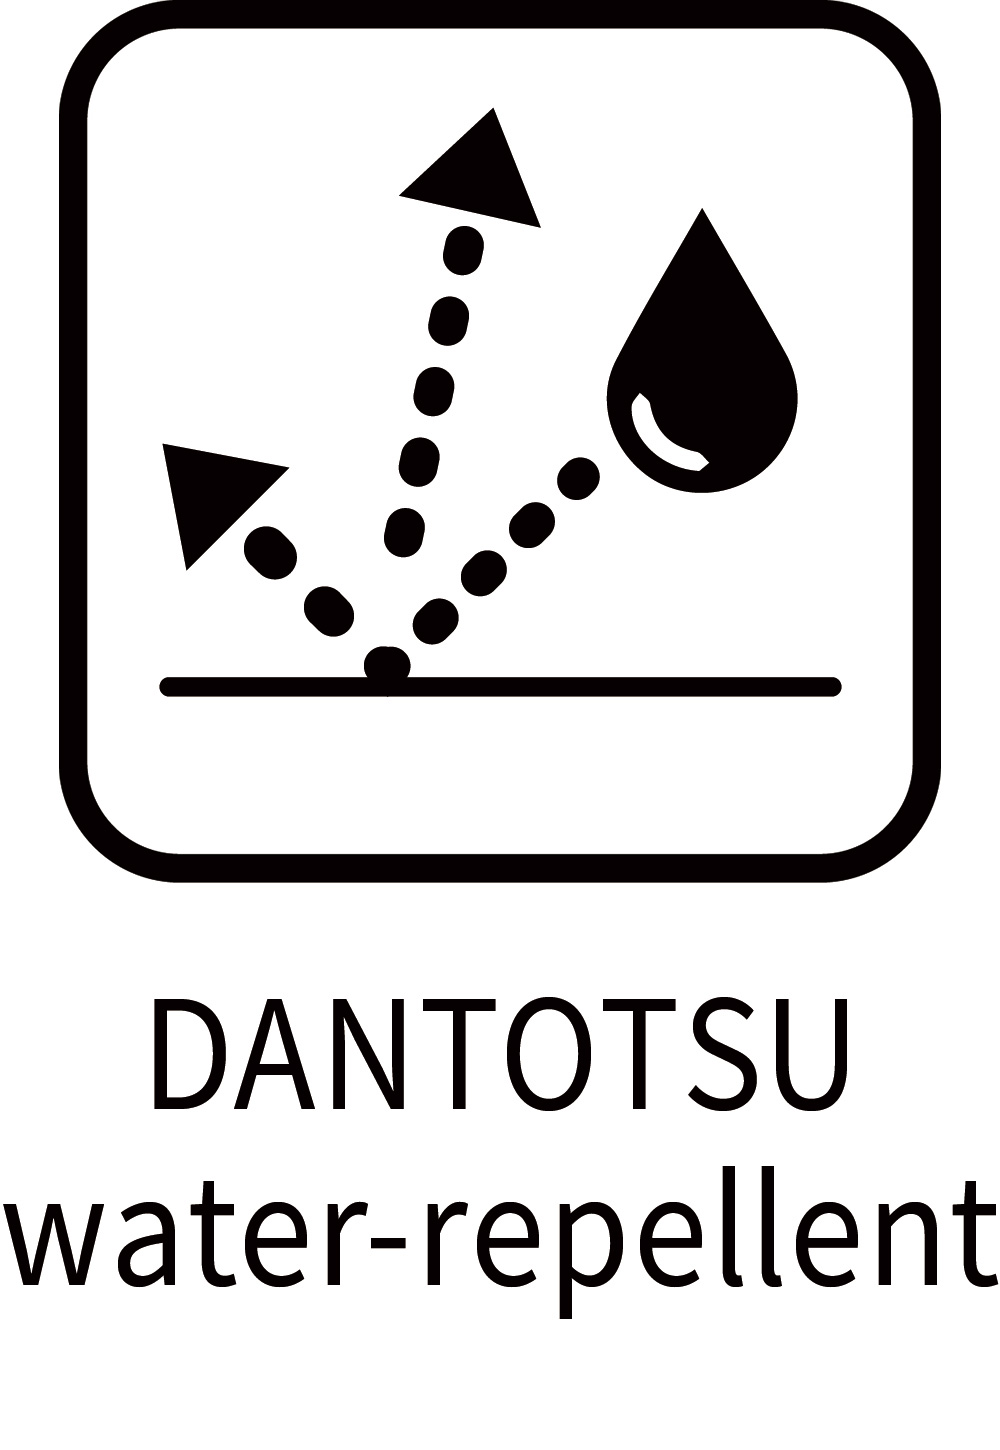 DANTOTSU water-repellent